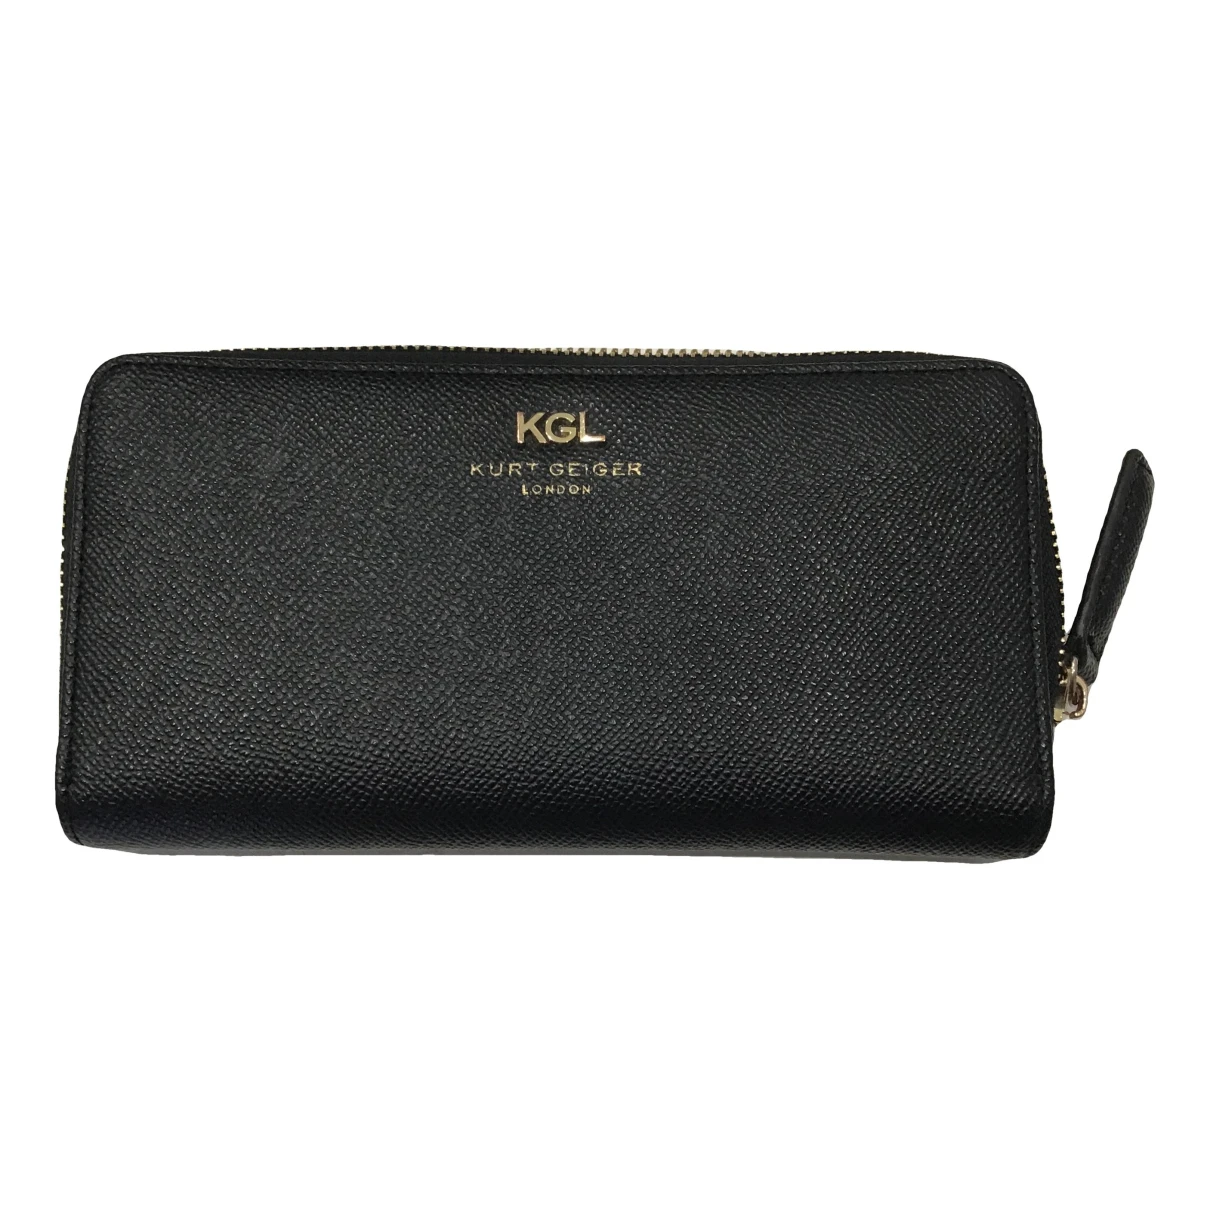 Pre-owned Kurt Geiger Vegan Leather Wallet In Black